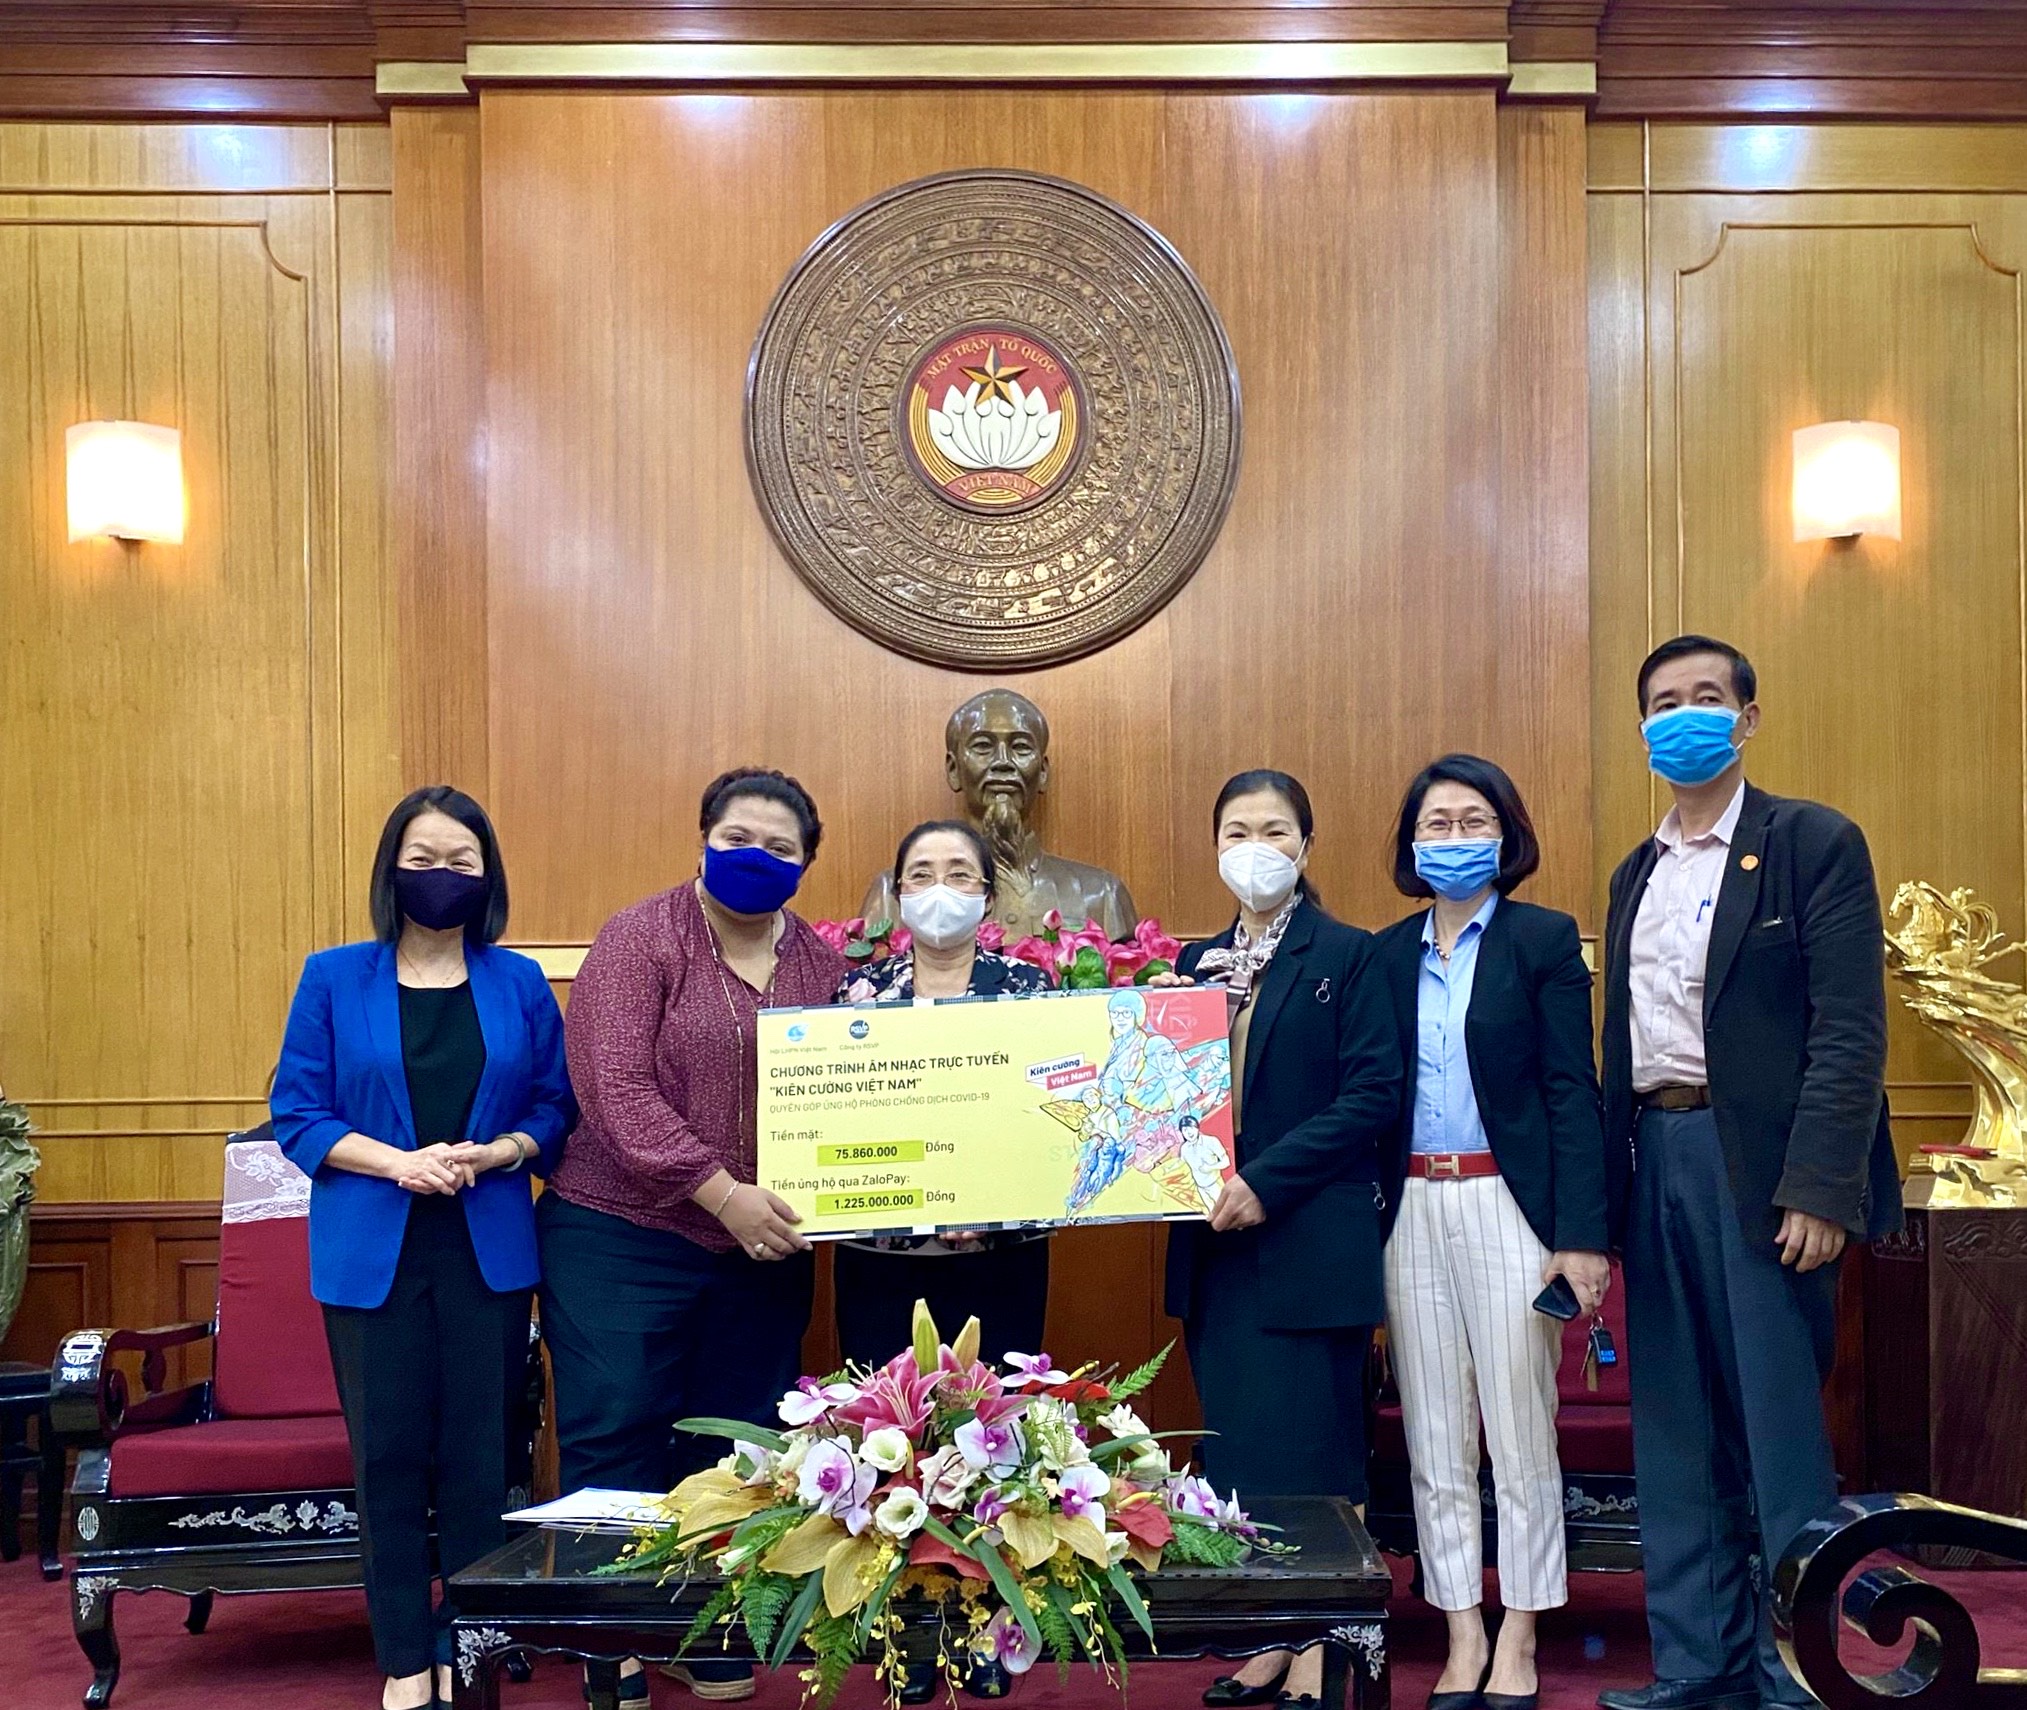 Hơn 20 nghệ sĩ, ca sĩ, cầu thủ hàng đầu Việt Nam gây quỹ thành công hơn 1.3 tỷ đồng ủng hộ những phụ nữ tham gia tuyến đầu chống dịch và phụ nữ bị ảnh hưởng nghiêm trọng bởi dịch Covid-19